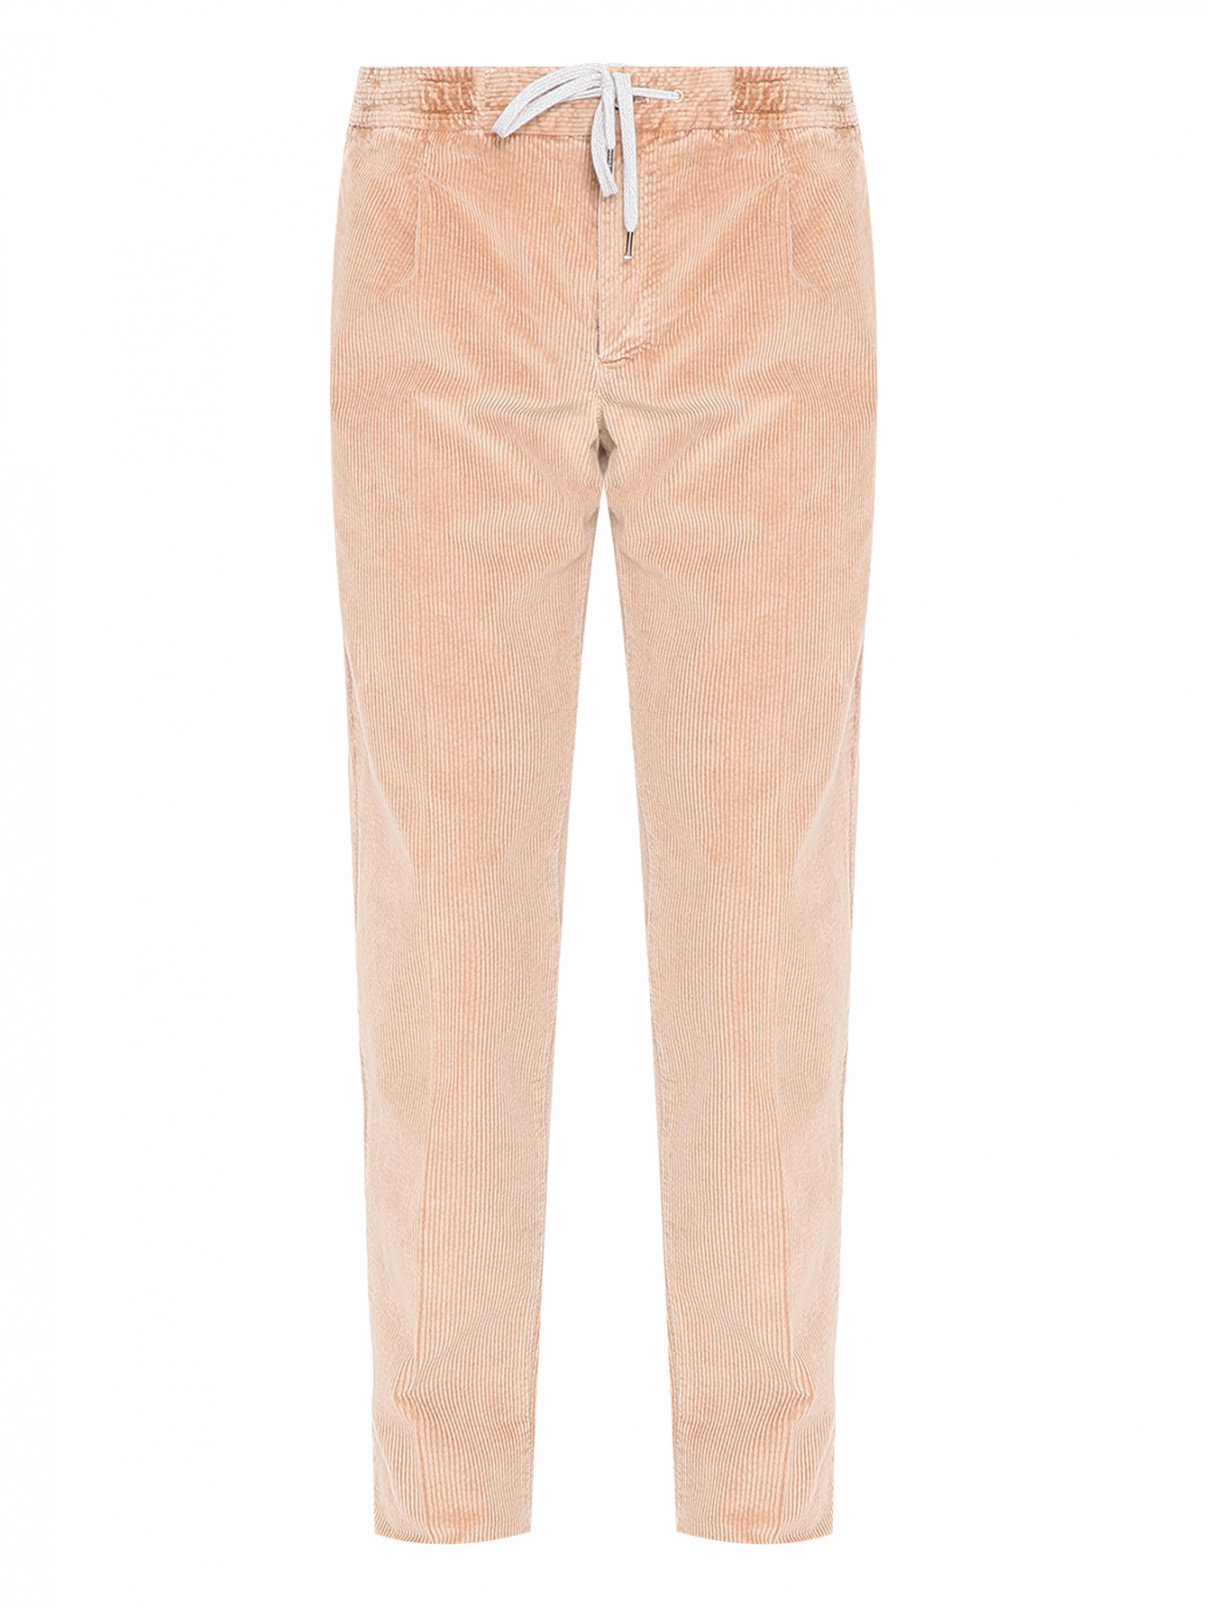 Вельветовые брюки из смешанного хлопка PT Torino  –  Общий вид  – Цвет:  Бежевый